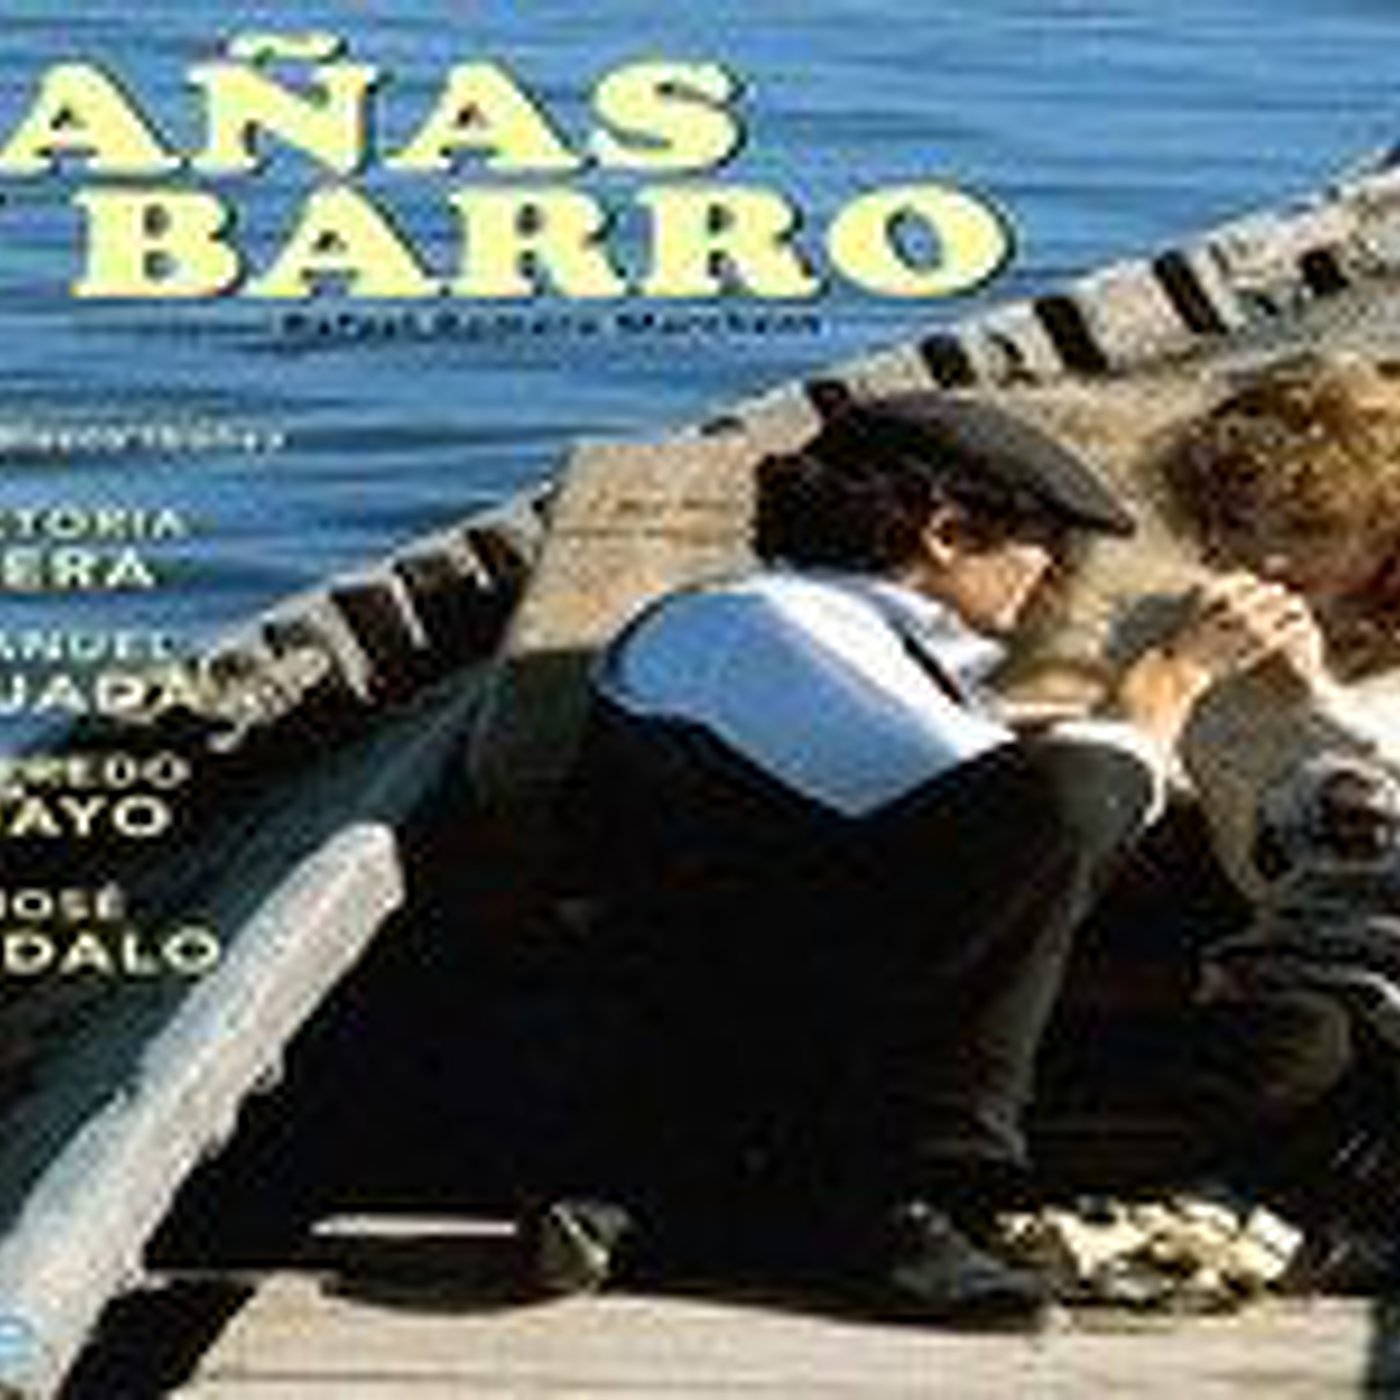 Cañas y Barro - Serie TV (Drama 1978) Final capítulos 5 y 6 en